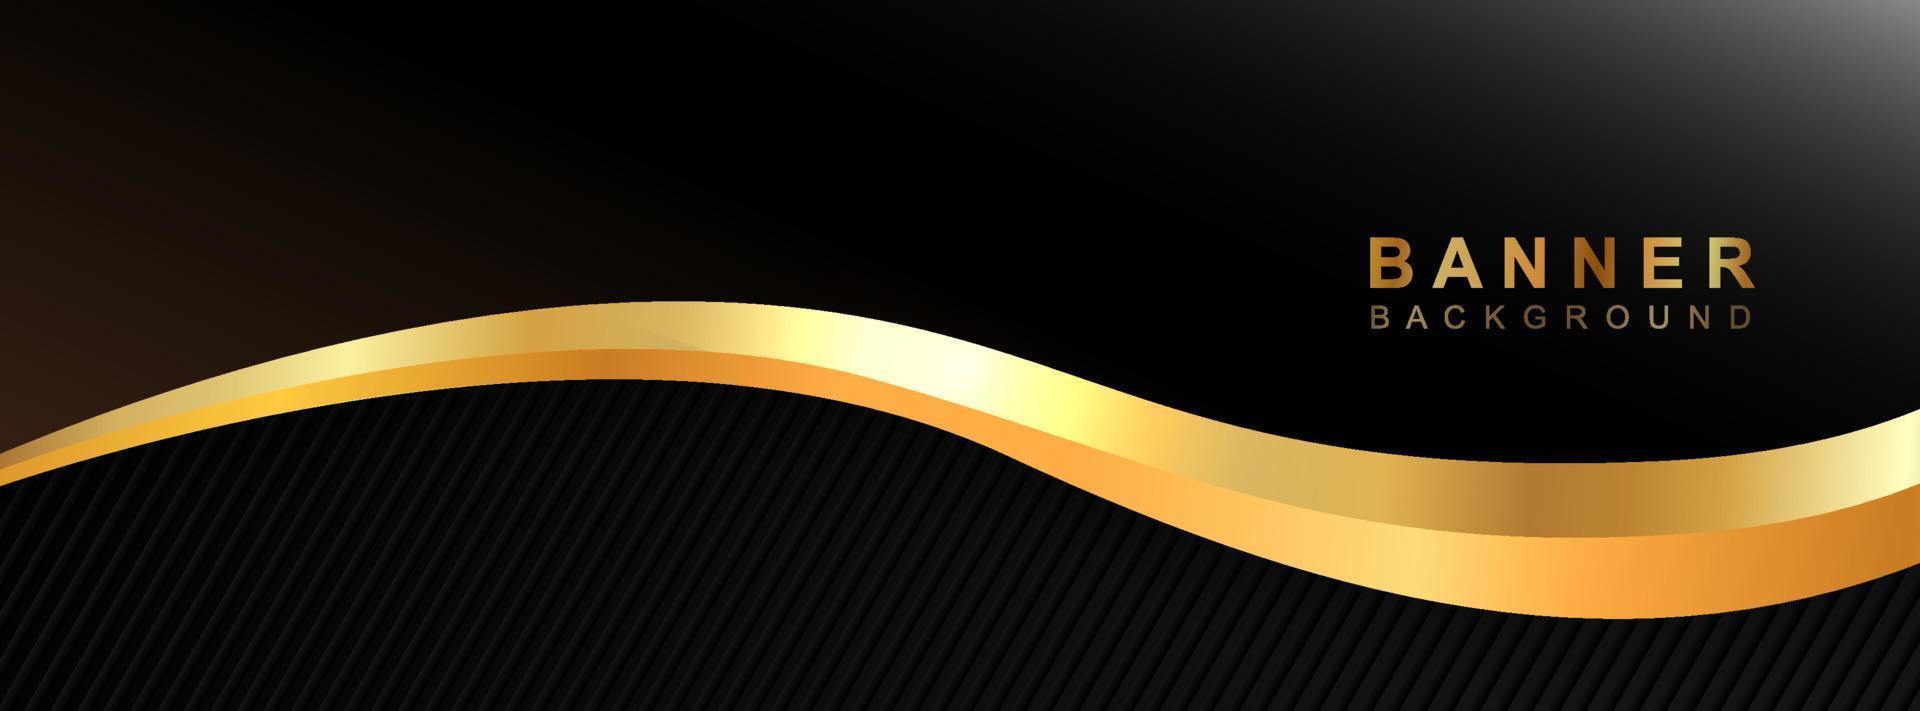 abstrakter schwarzer und goldener Hintergrund, abstraktes Bannerdesign des Vektors vektor